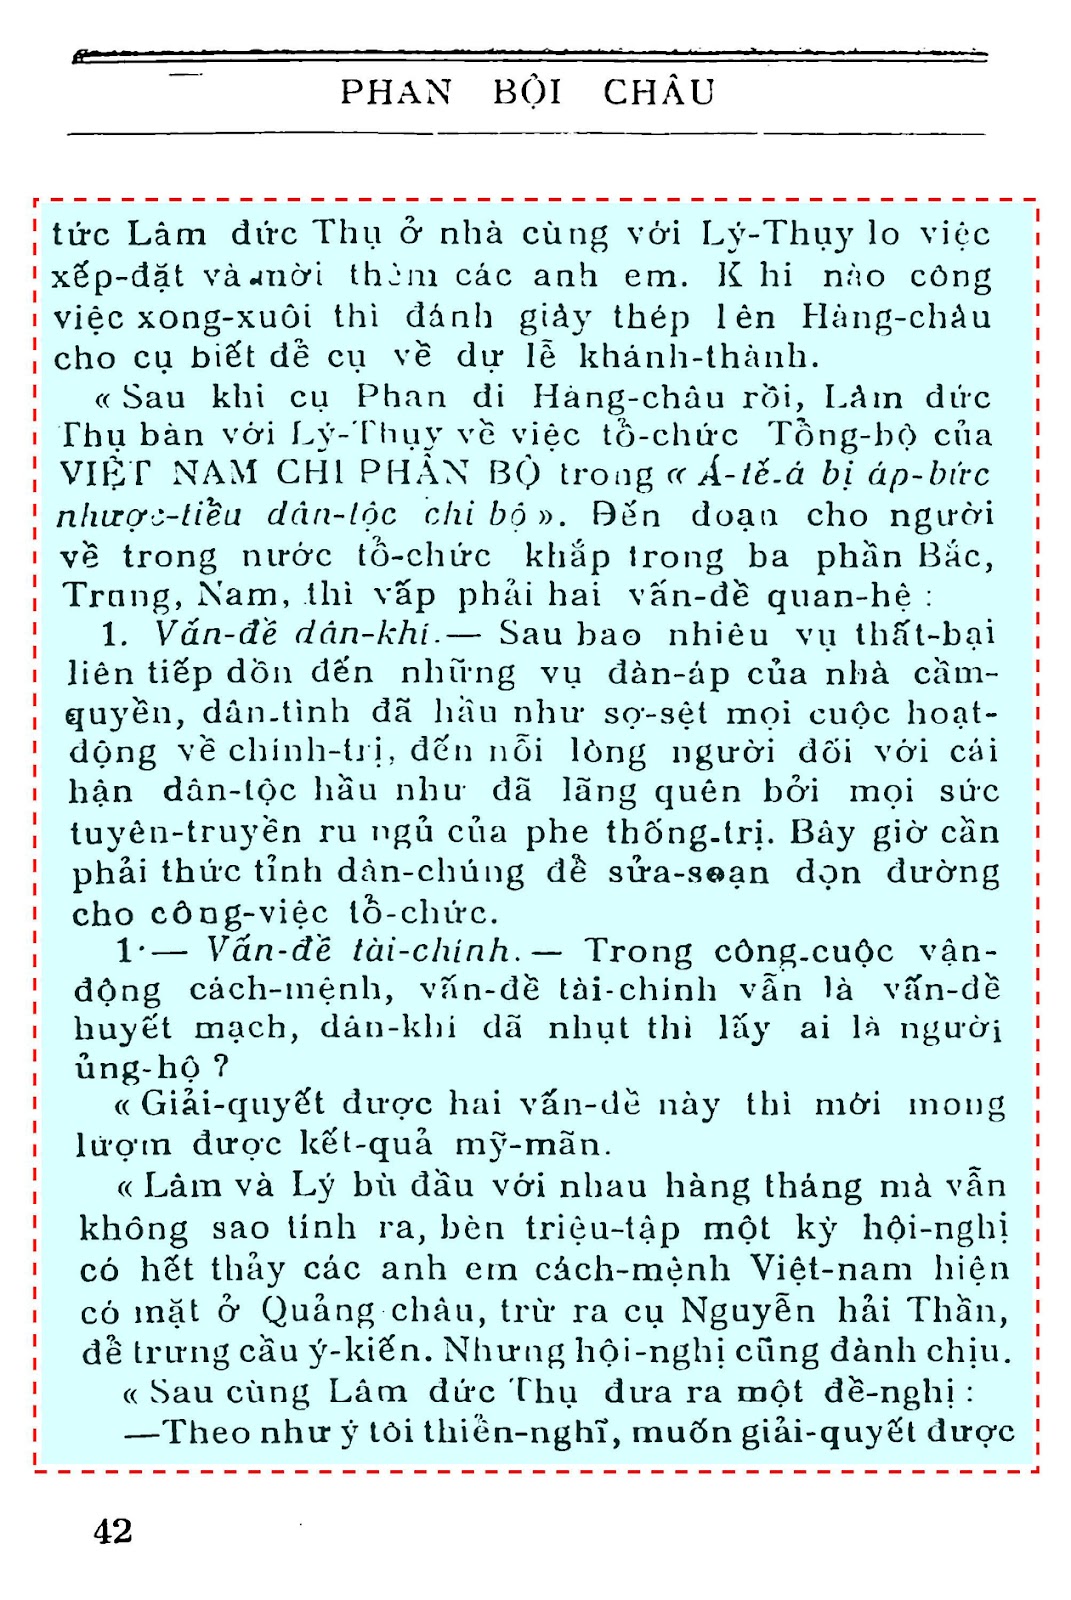 Trang 42 Phan Bội Chau - Thế Nguyên.jpg